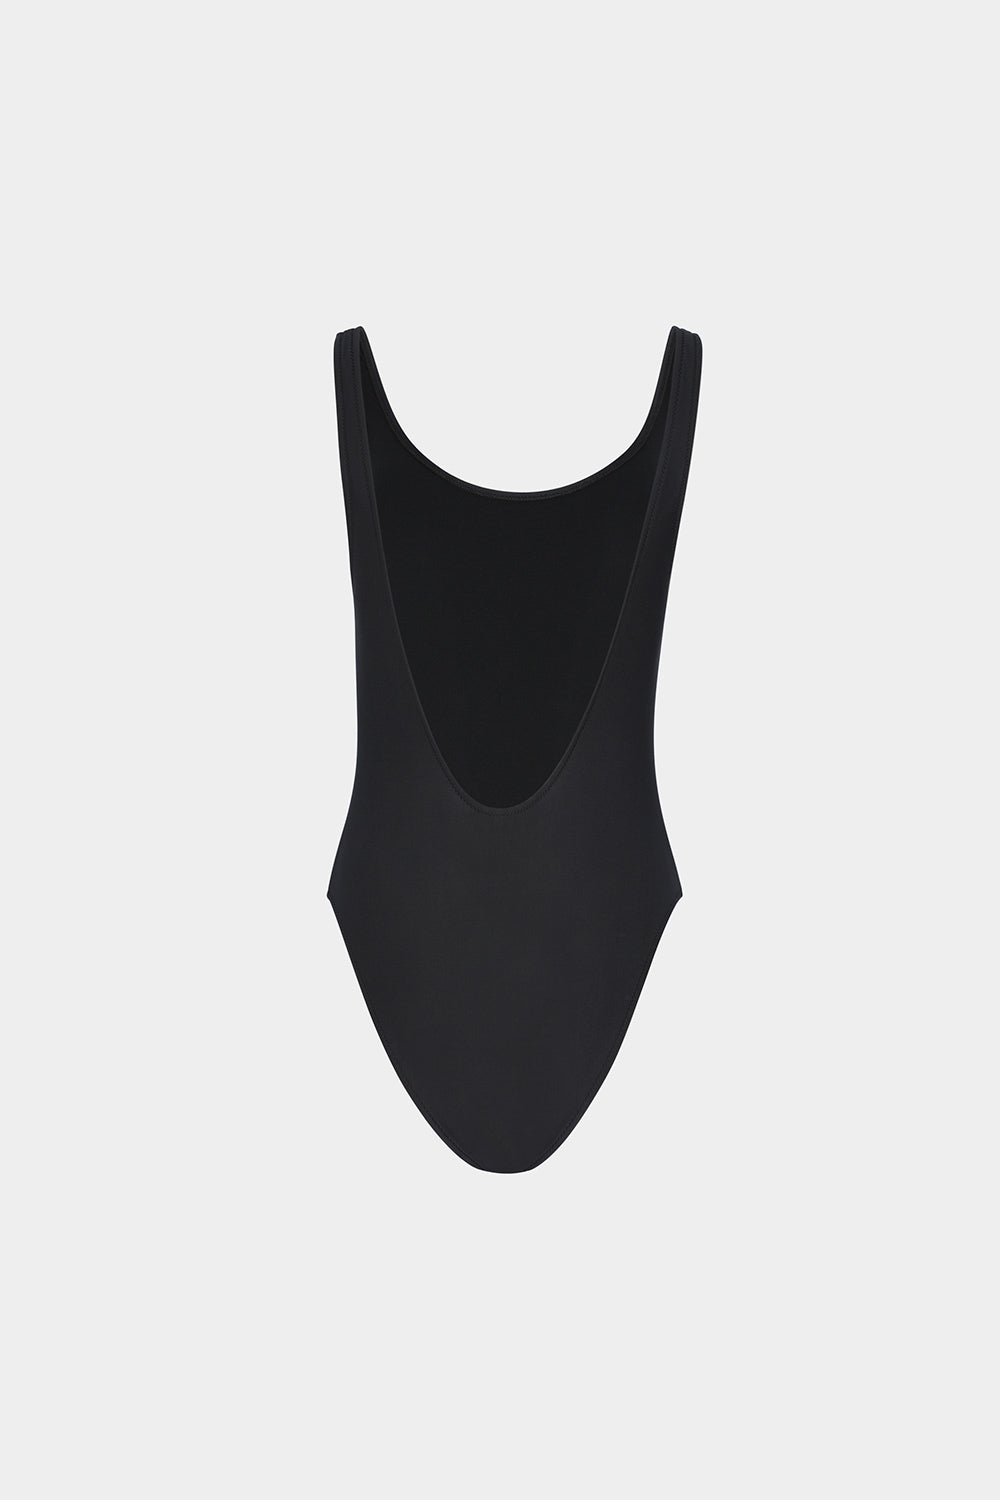 בגד ים שלם לנשים הדפס עיניים CHIARA FERRAGNI Vendome online | ונדום .